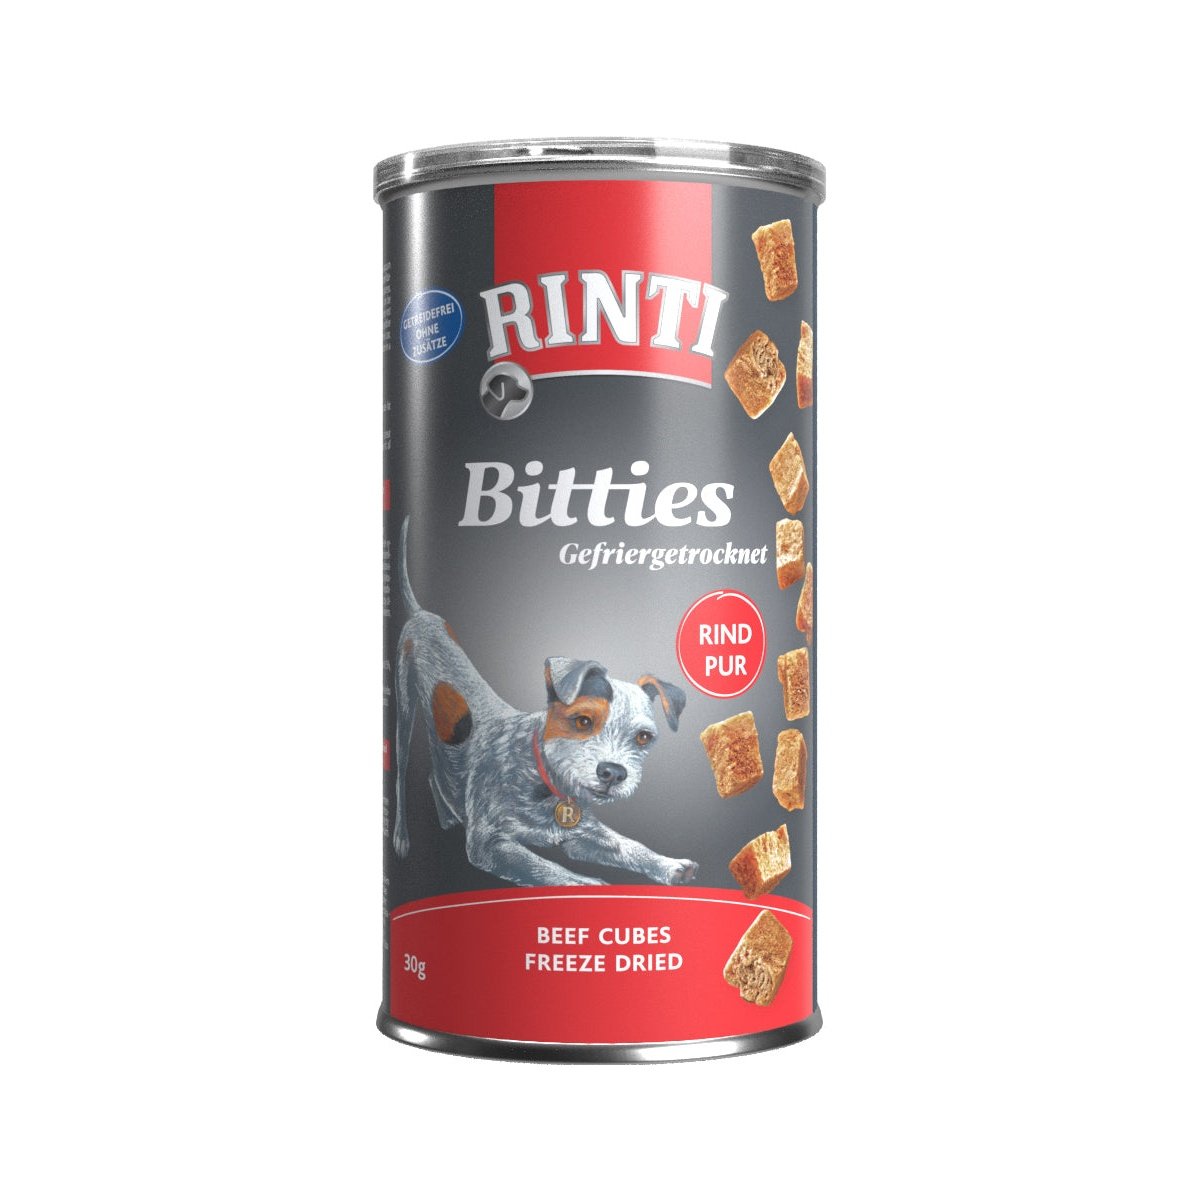 Artikel mit dem Namen Rinti Bitties Rind Pur im Shop von zoo.de , dem Onlineshop für nachhaltiges Hundefutter und Katzenfutter.